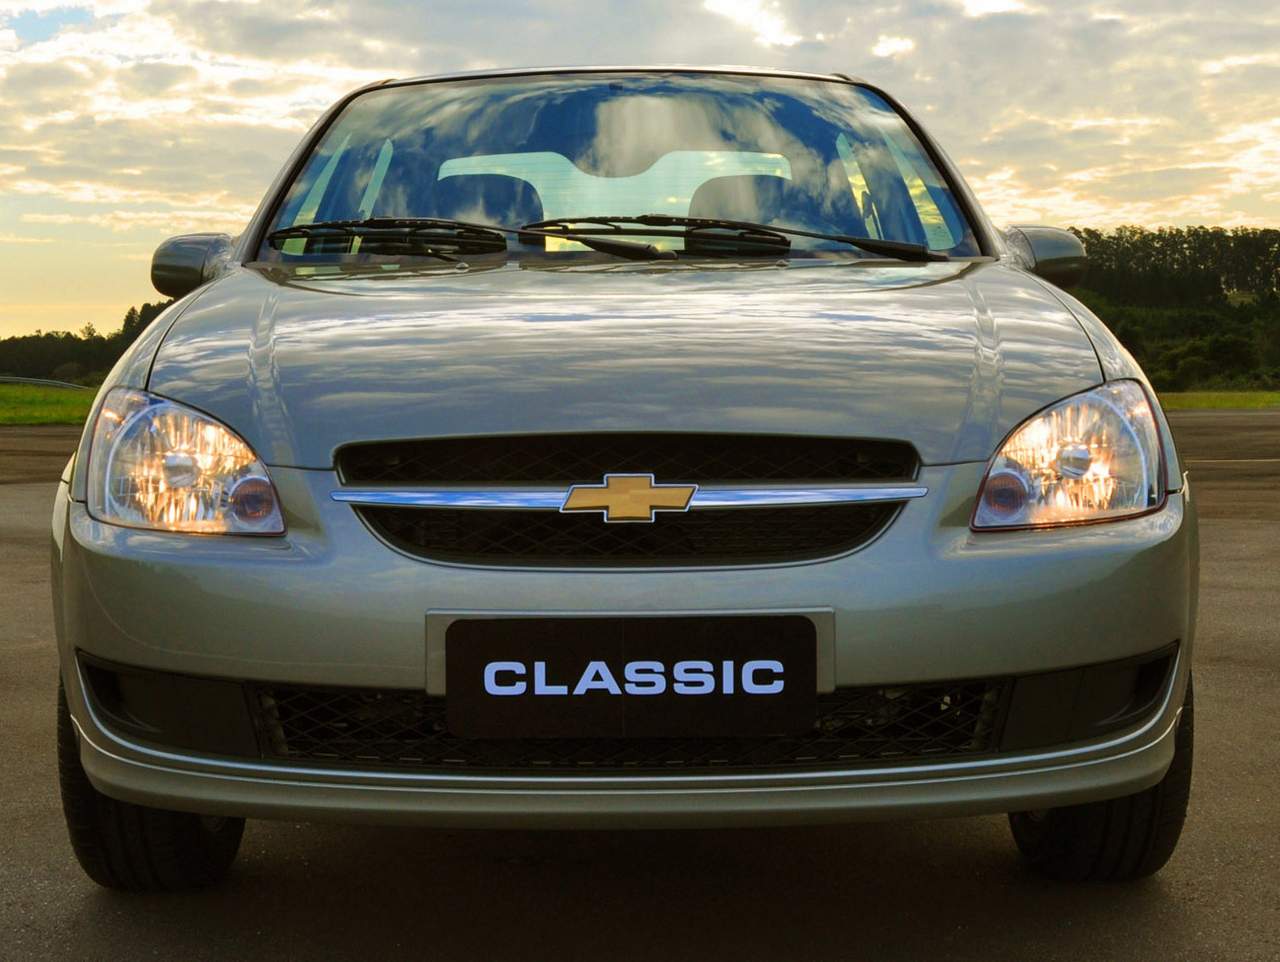 Chevrolet Corsa Sedan/Classic: fim de linha no Brasil